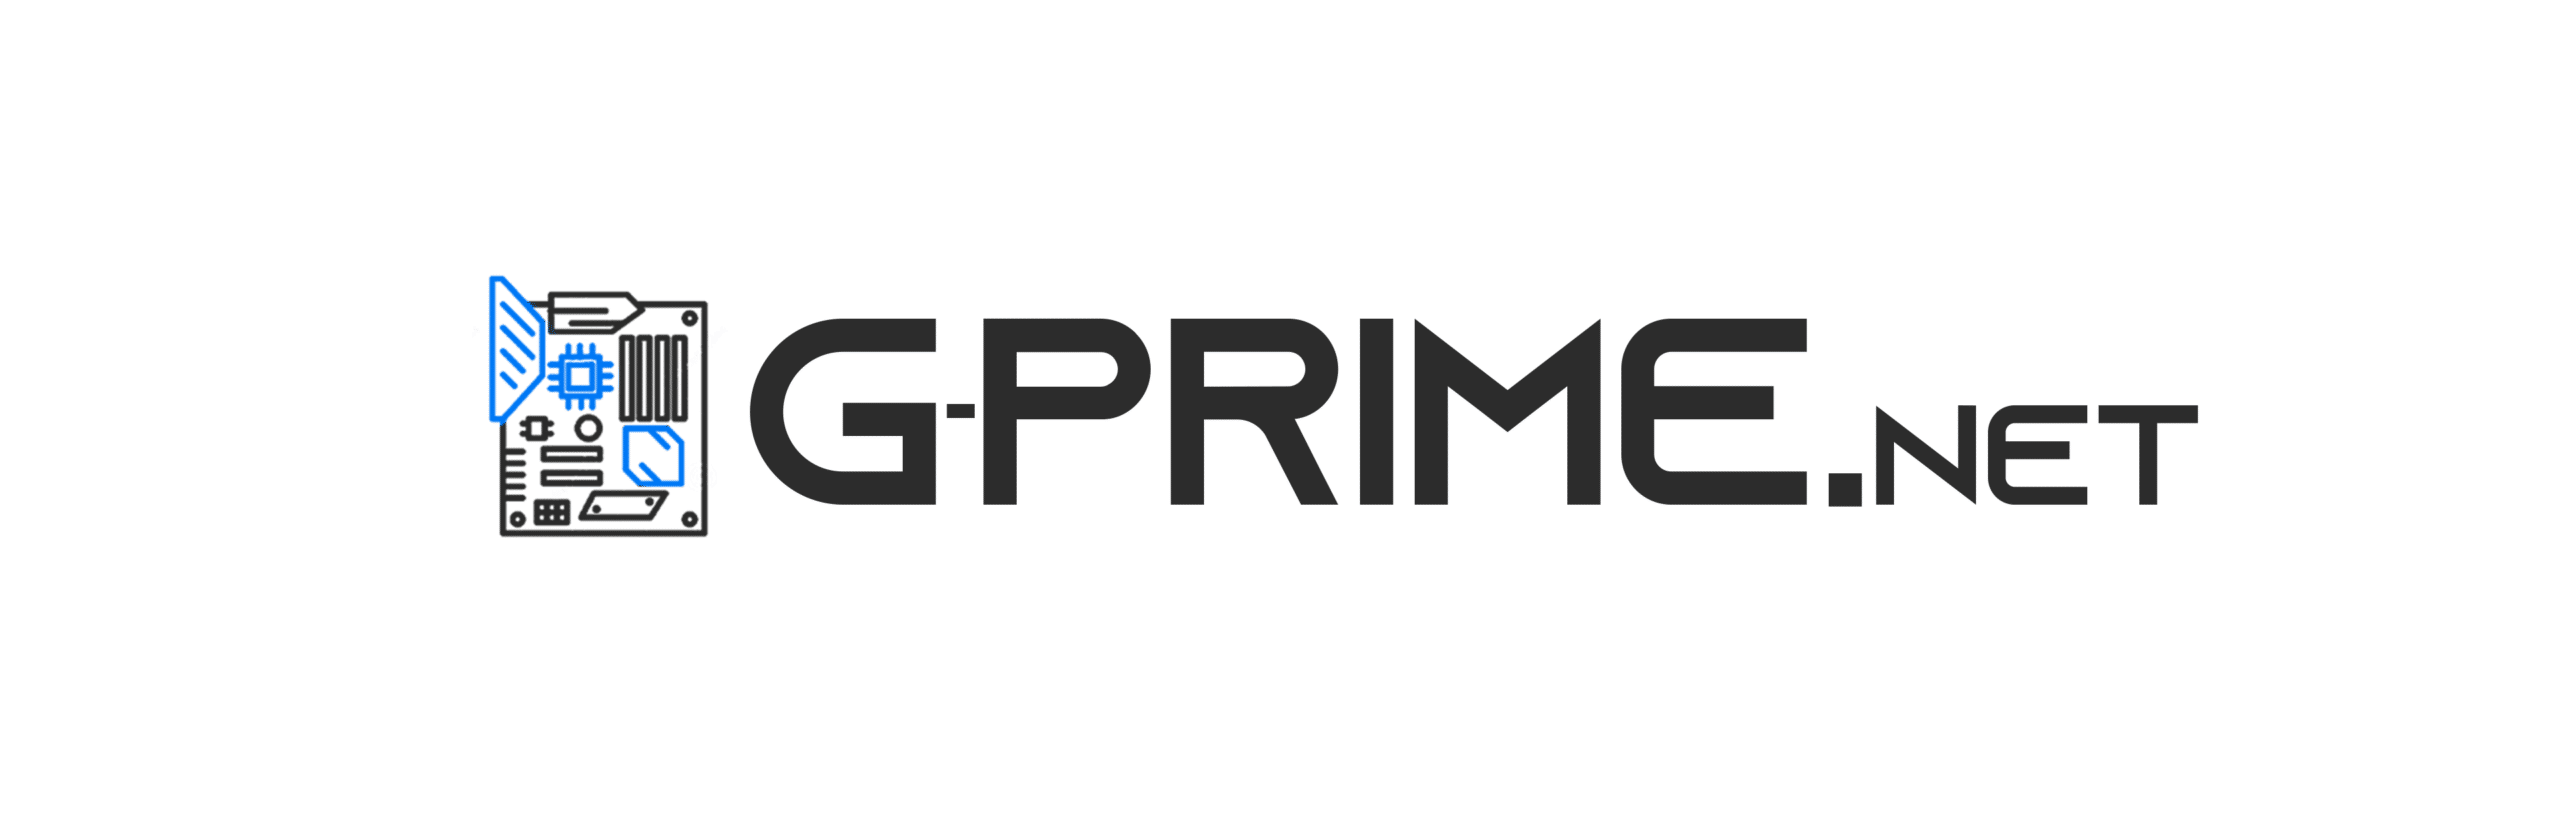 G-Prime